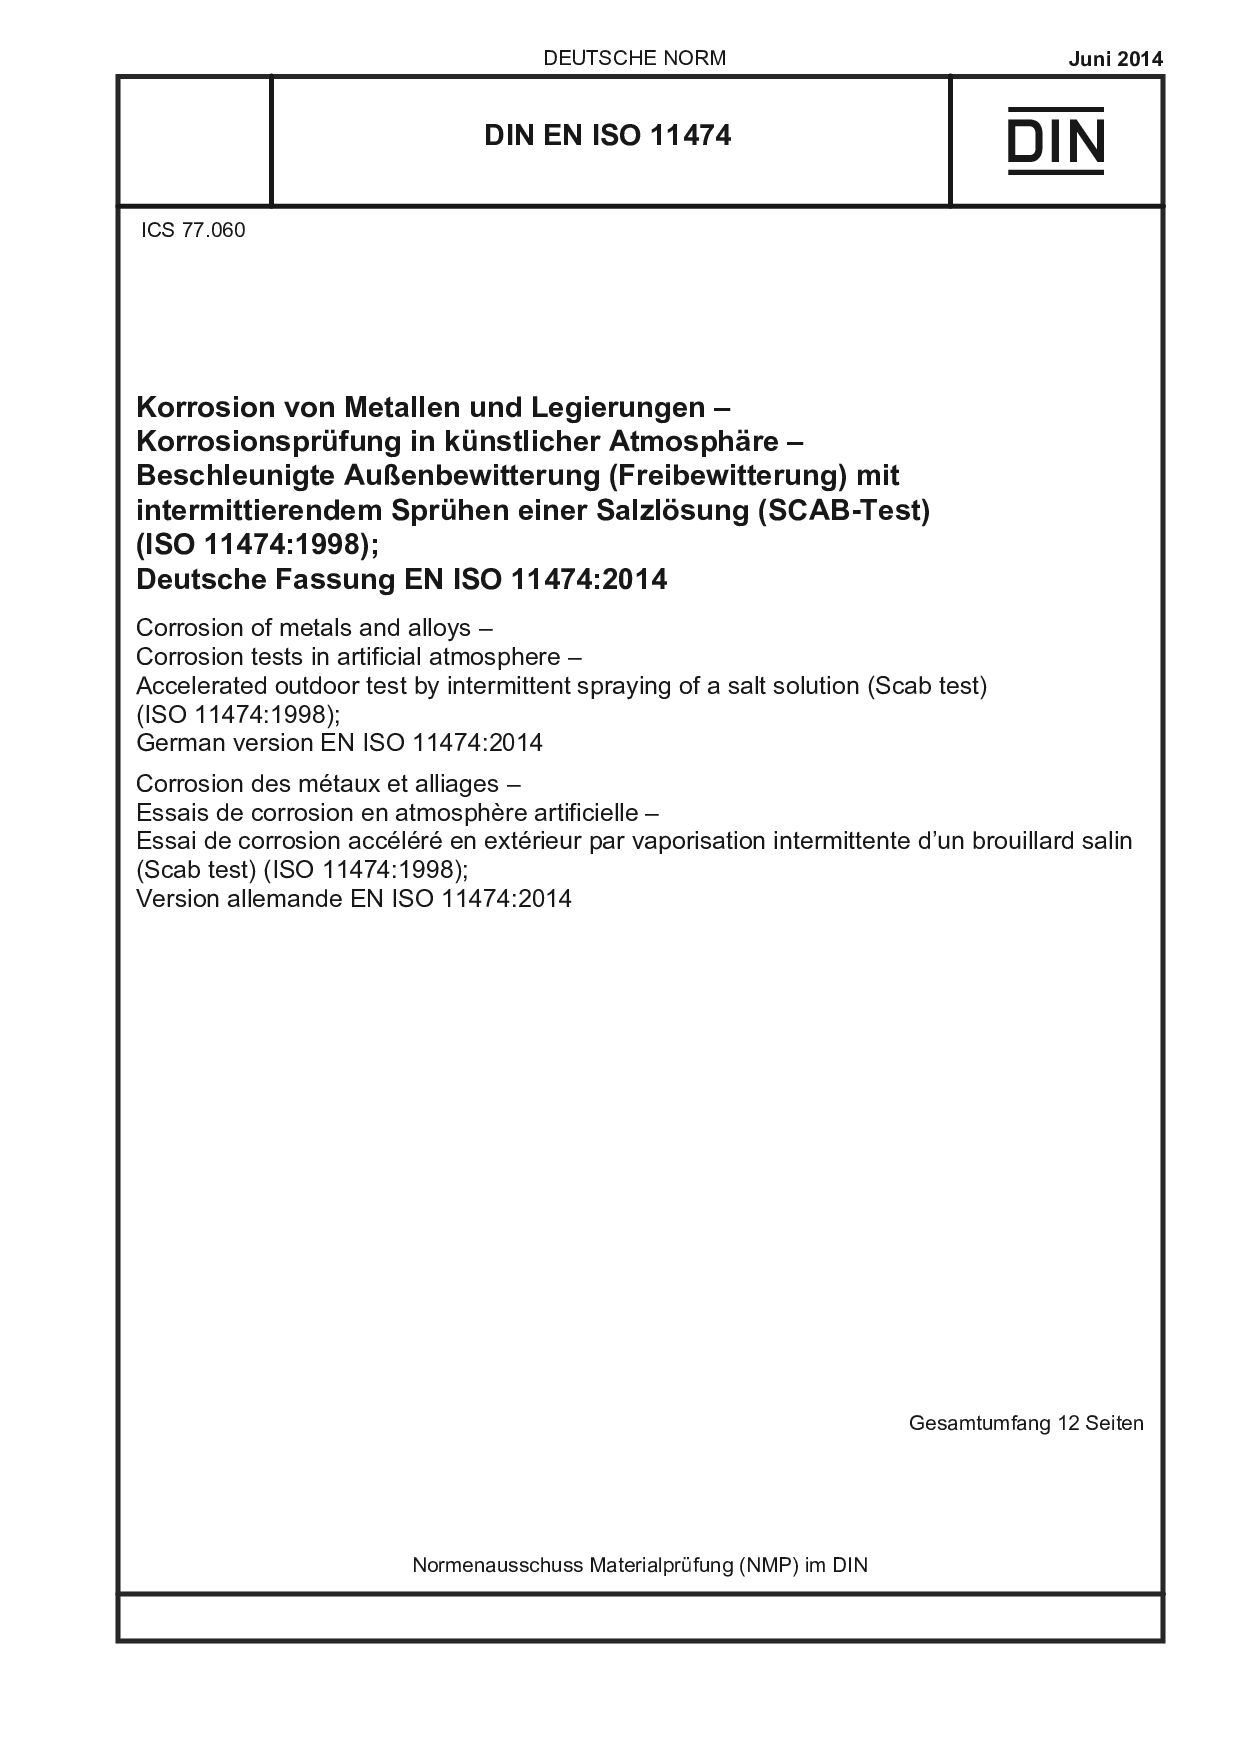 DIN EN ISO 11474:2014-06